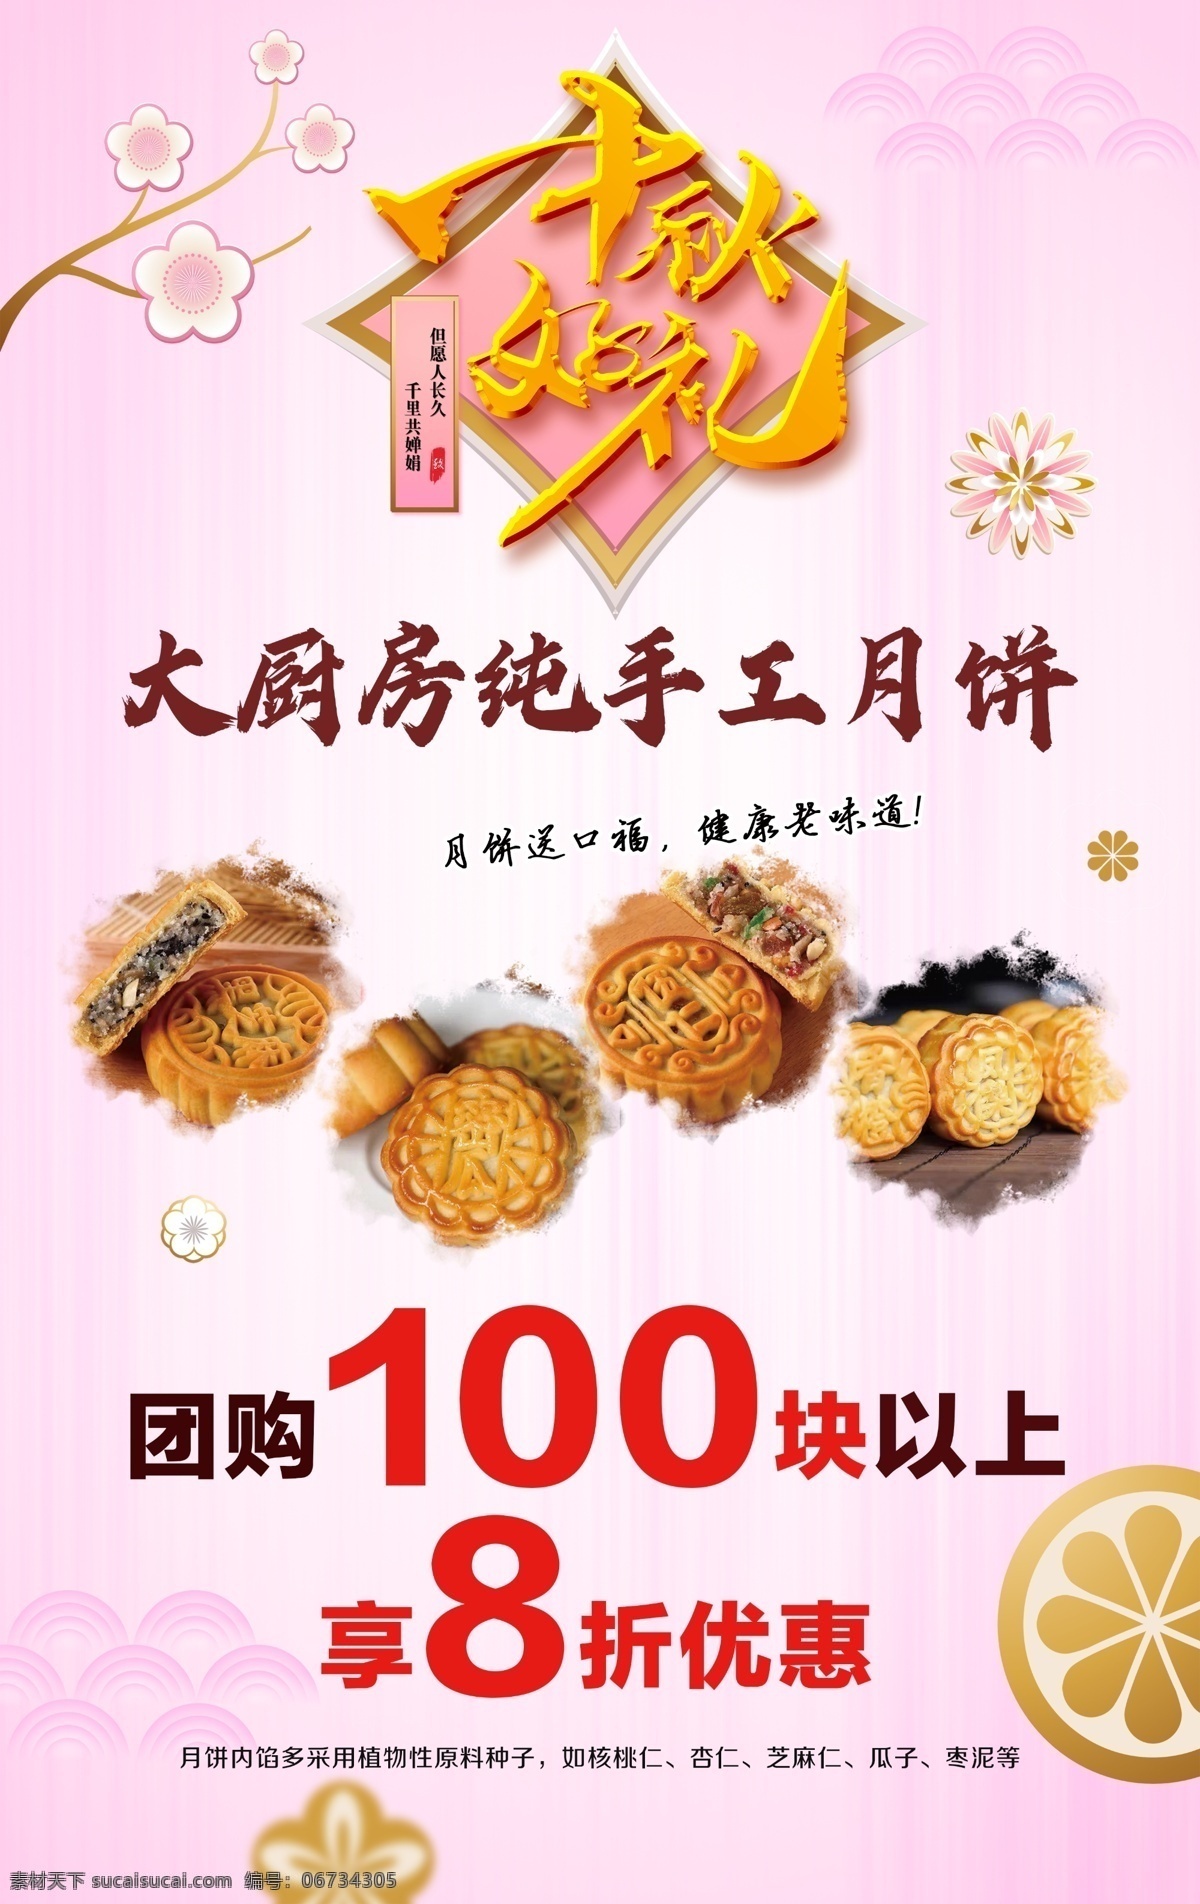 月饼 海报图片 海报 广告 宣传 粉色 浪漫 中国风 古典 食品 中秋